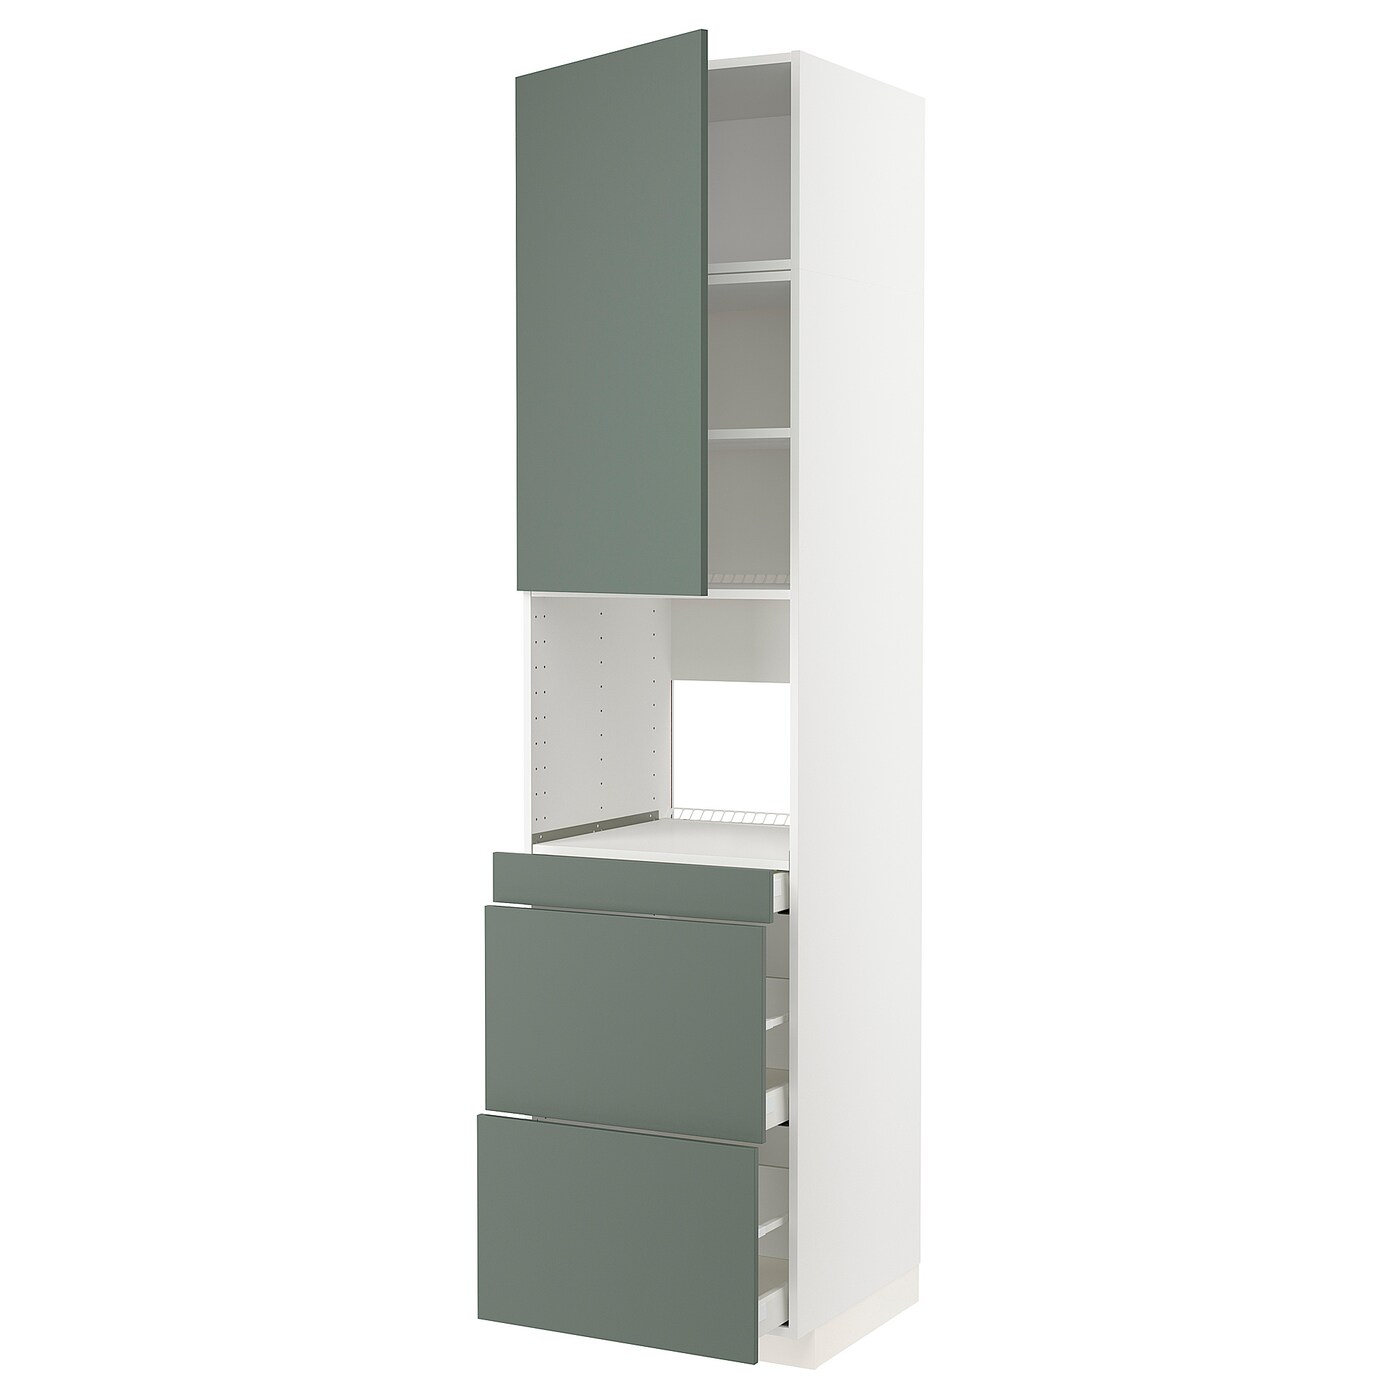 Шкаф - METOD / MAXIMERA  IKEA/ МЕТОД/МАКСИМЕРА  ИКЕА,  248х60 см, зеленый/белый